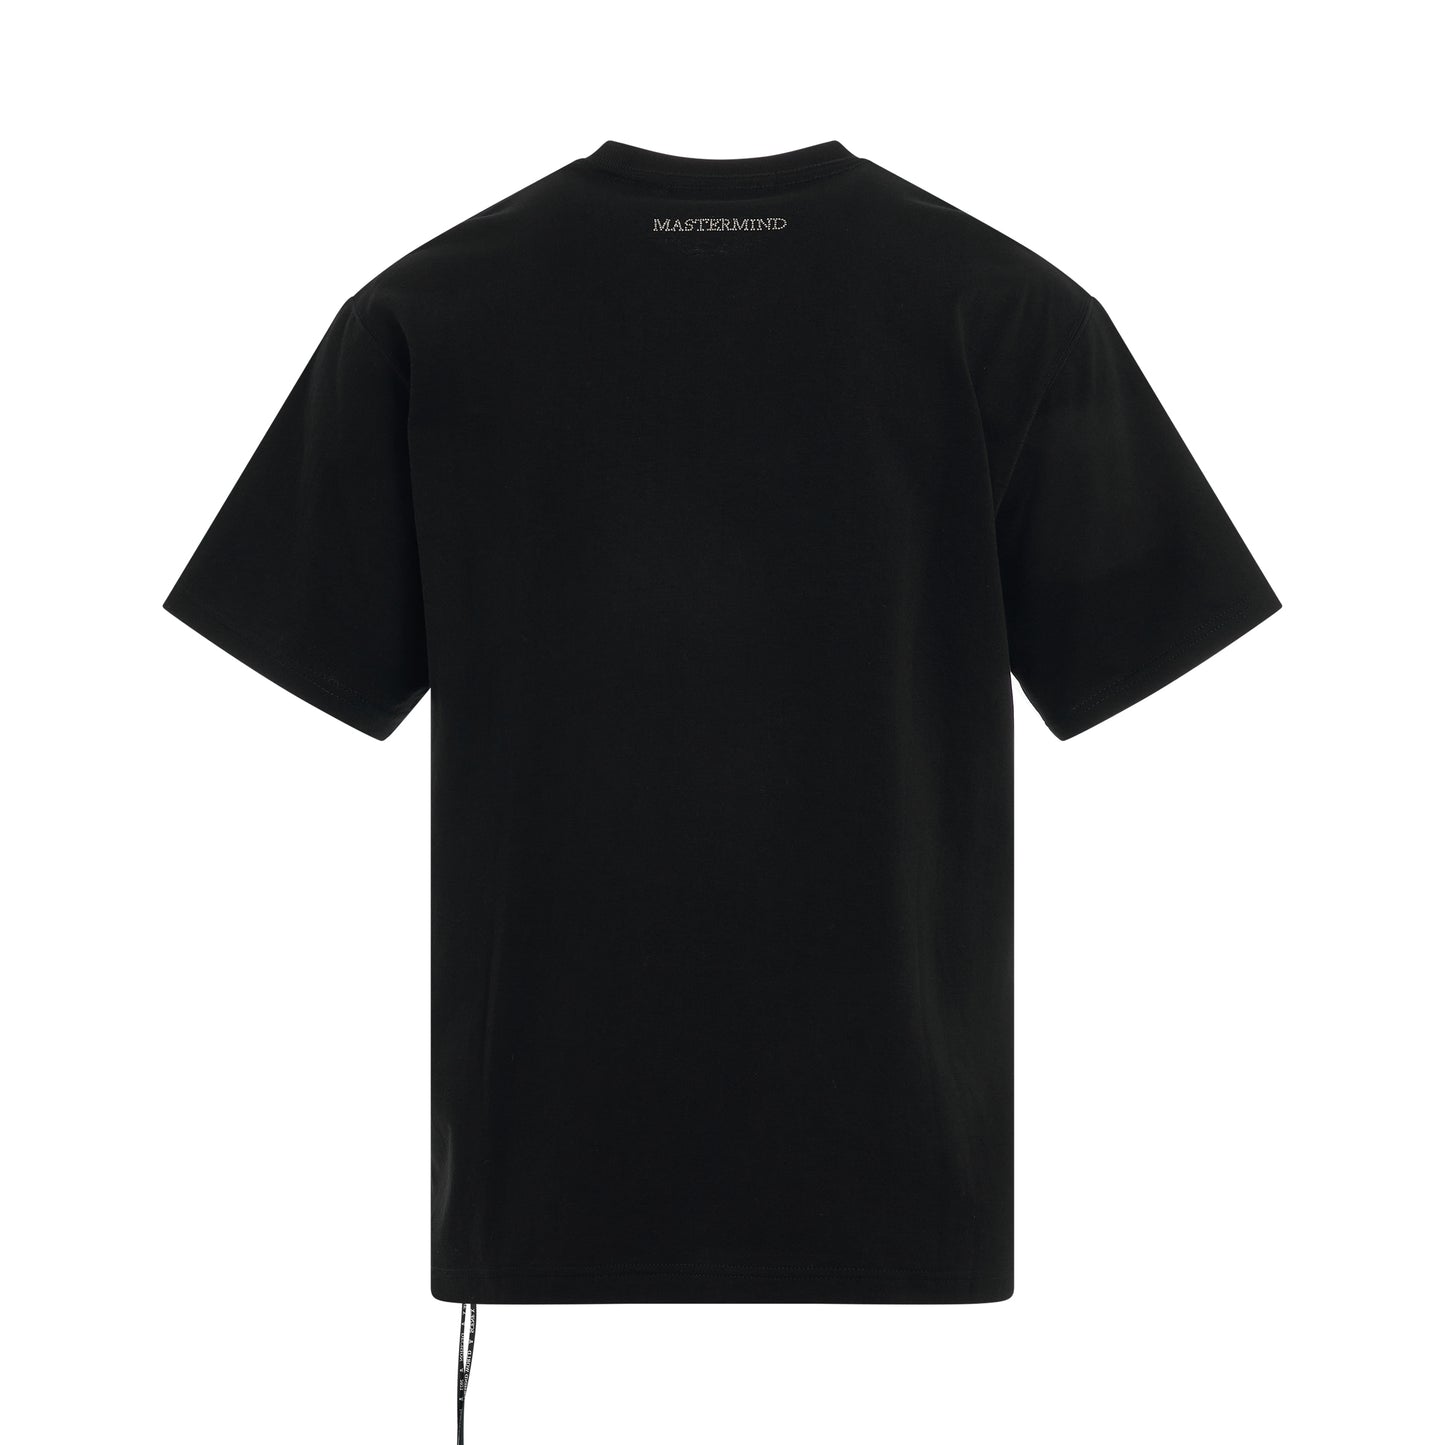 Swarovski Skull T-Shirt in Black